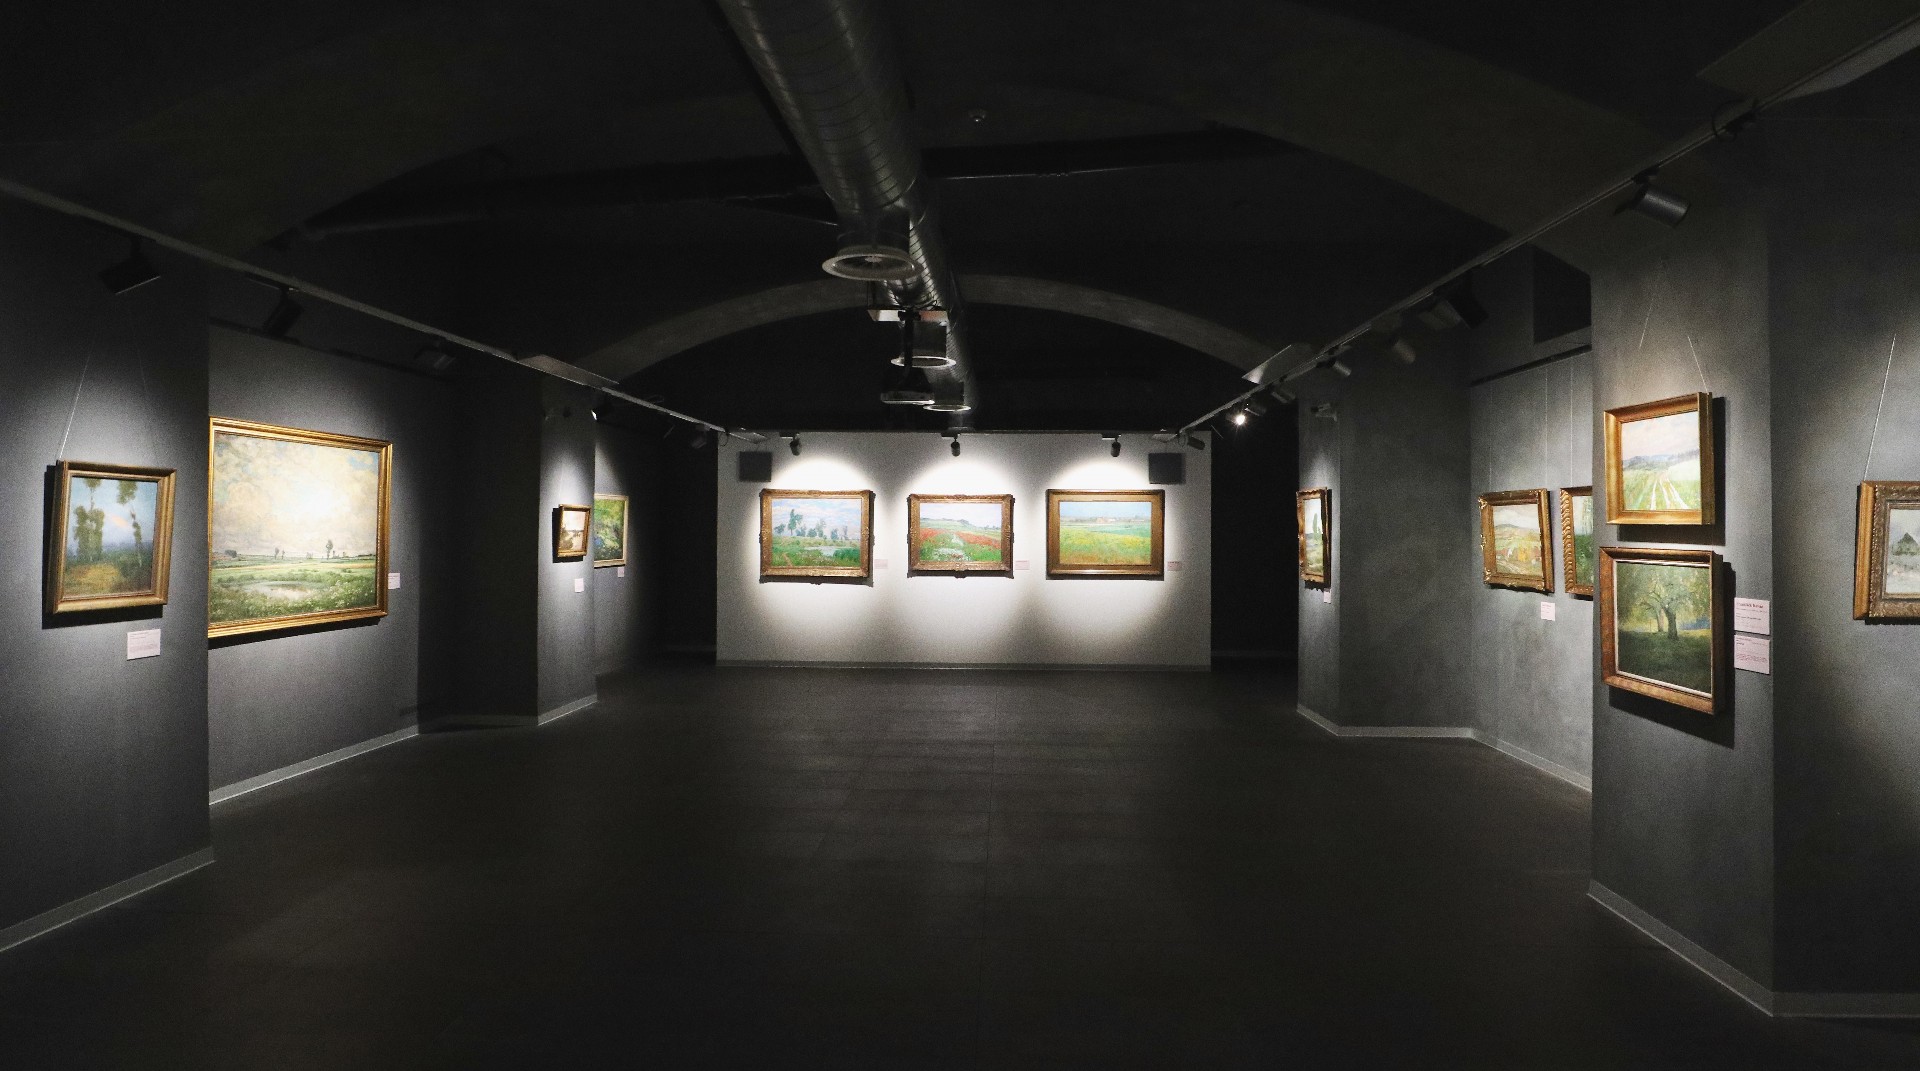 Pohled do expozice v Galerii ČS s trojicí Kavánových obrazů v čele sálu